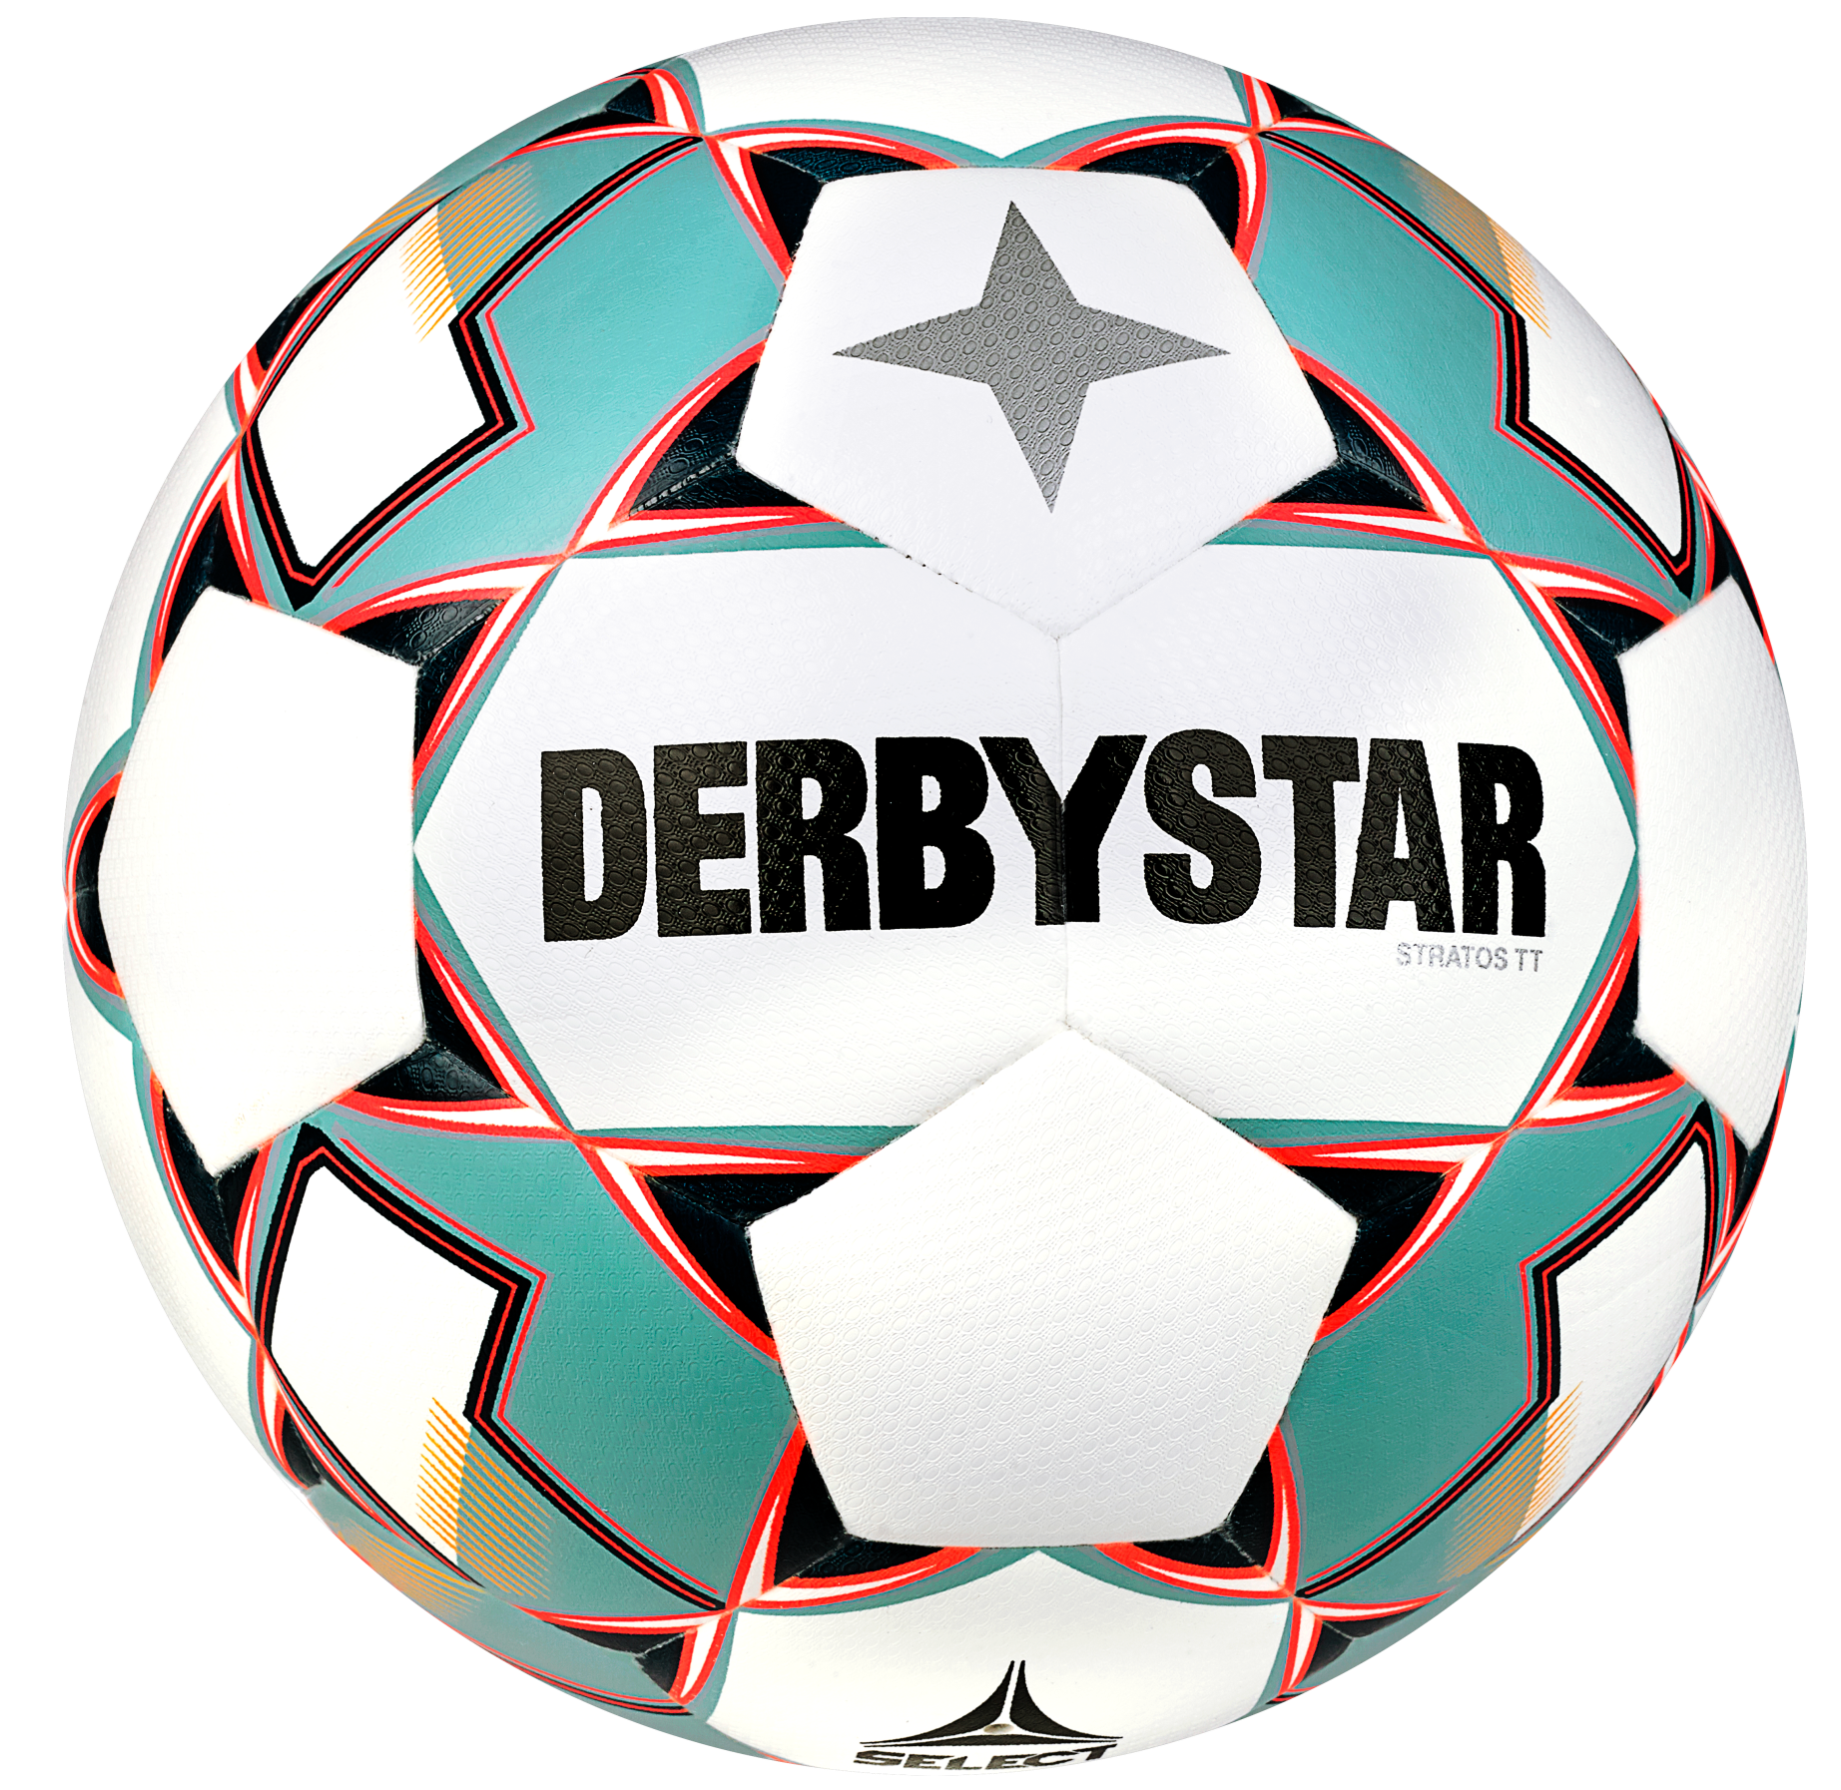 Pallo Derbystar Stratos TT v23 Trainingsball